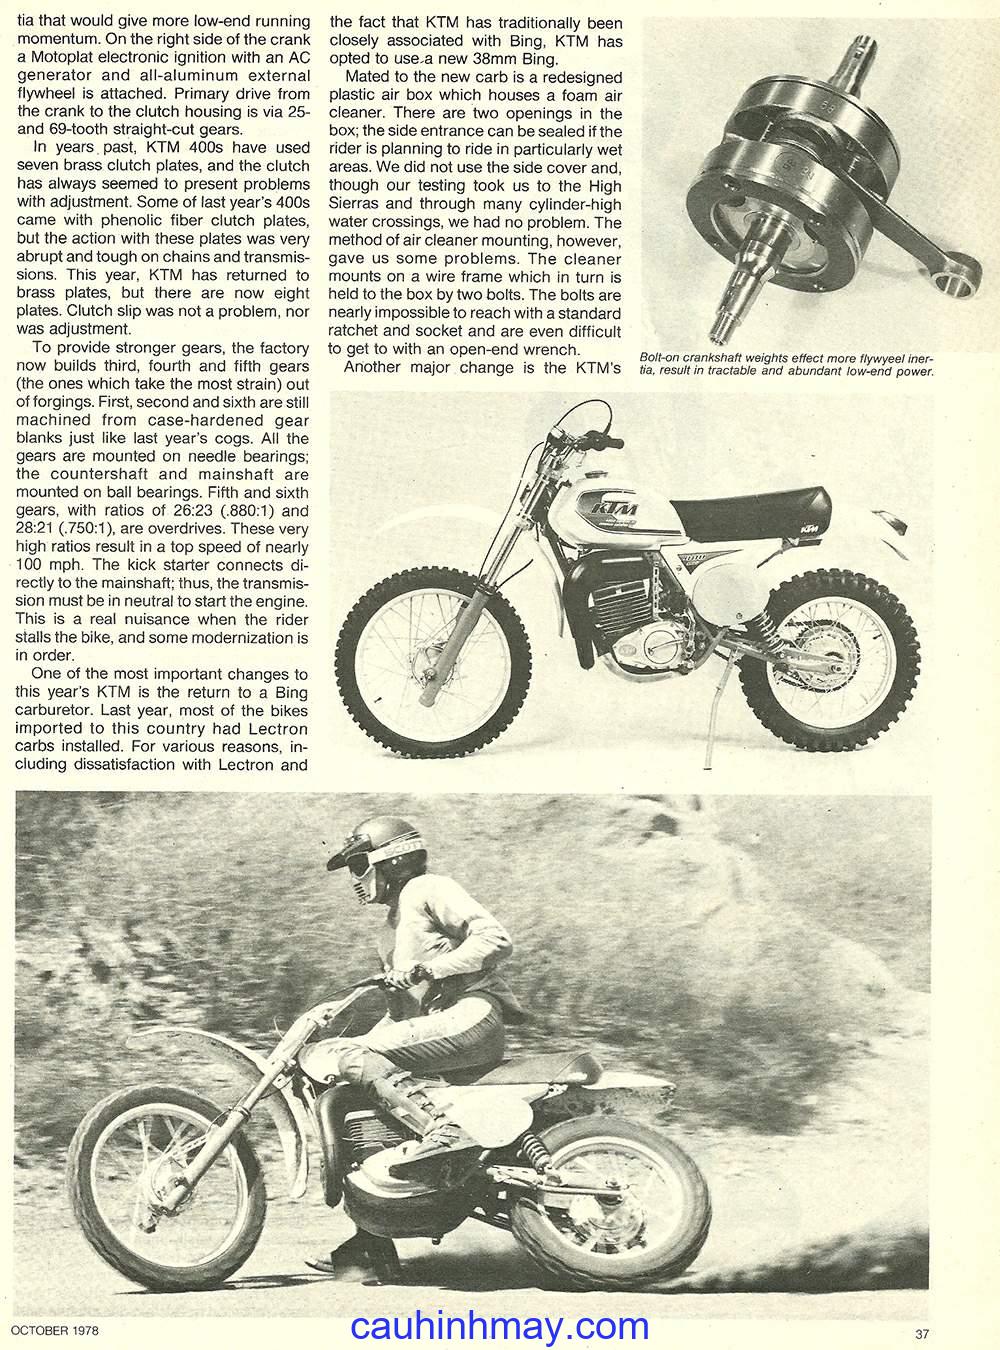 1980 KTM 350 ENDURO - cauhinhmay.com